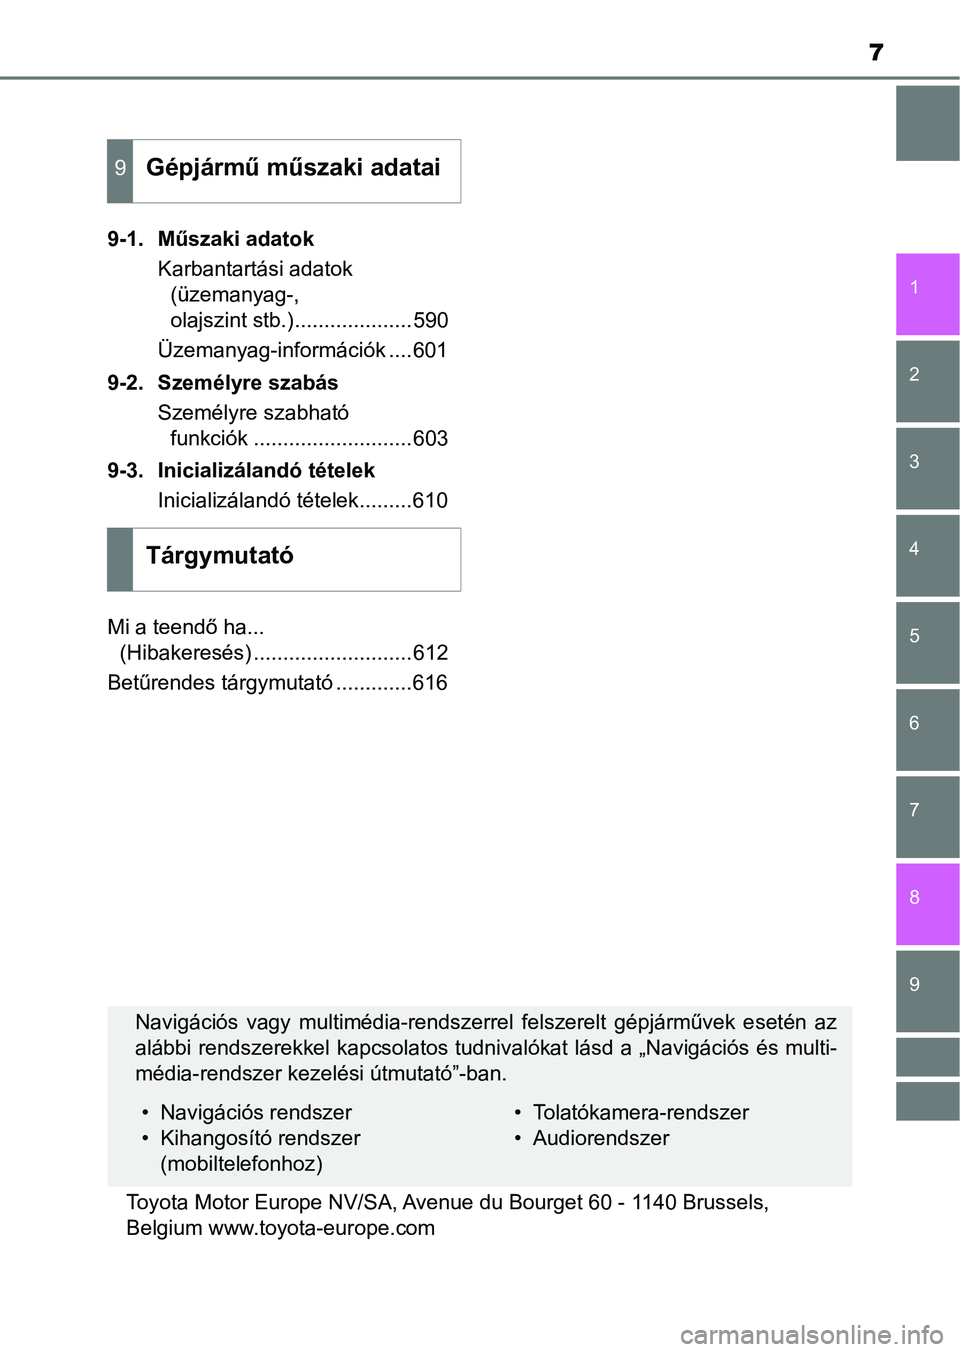 TOYOTA YARIS HATCHBACK 2018  Kezelési útmutató (in Hungarian) 7
1
7
8 6 5
4
3
2
9
9-1. Műszaki adatokKarbantartási adatok (üzemanyag-, 
olajszint stb.)....................590
Üzemanyag-információk ....601
9-2. Személyre szabás Személyre szabható funkci